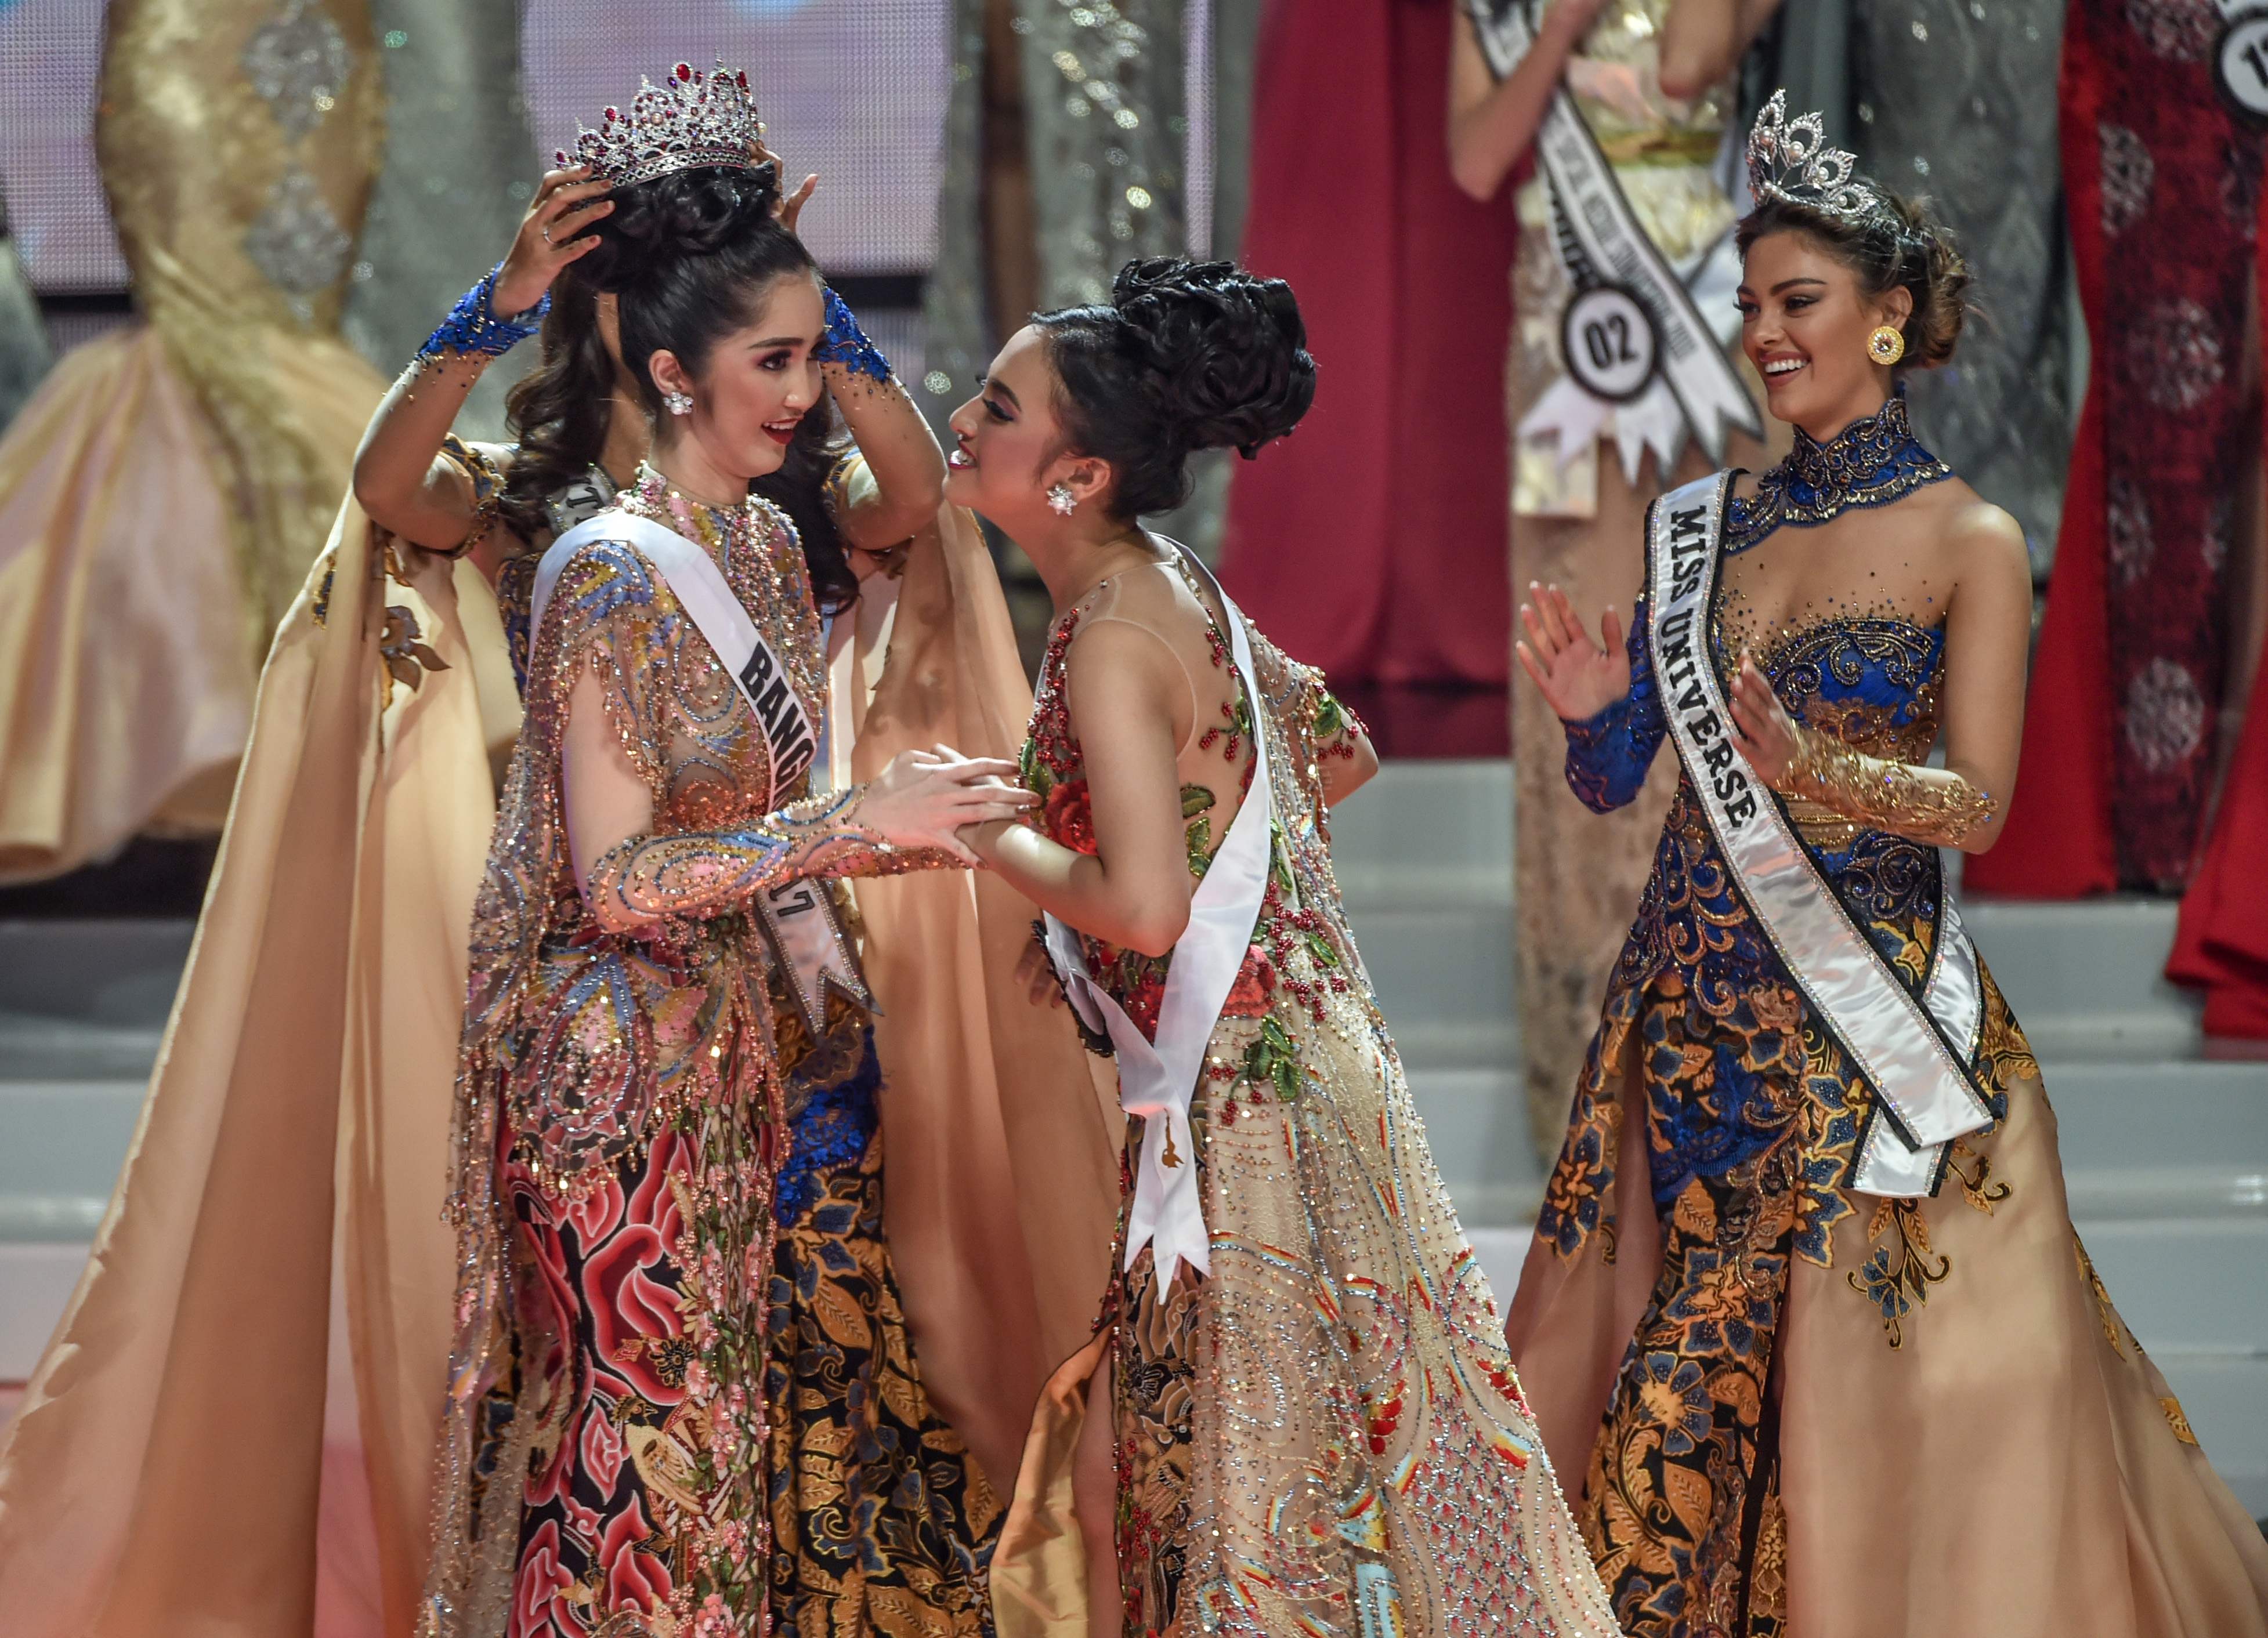 فعاليات حفل اختيار ملكة جمال اندونيسيا